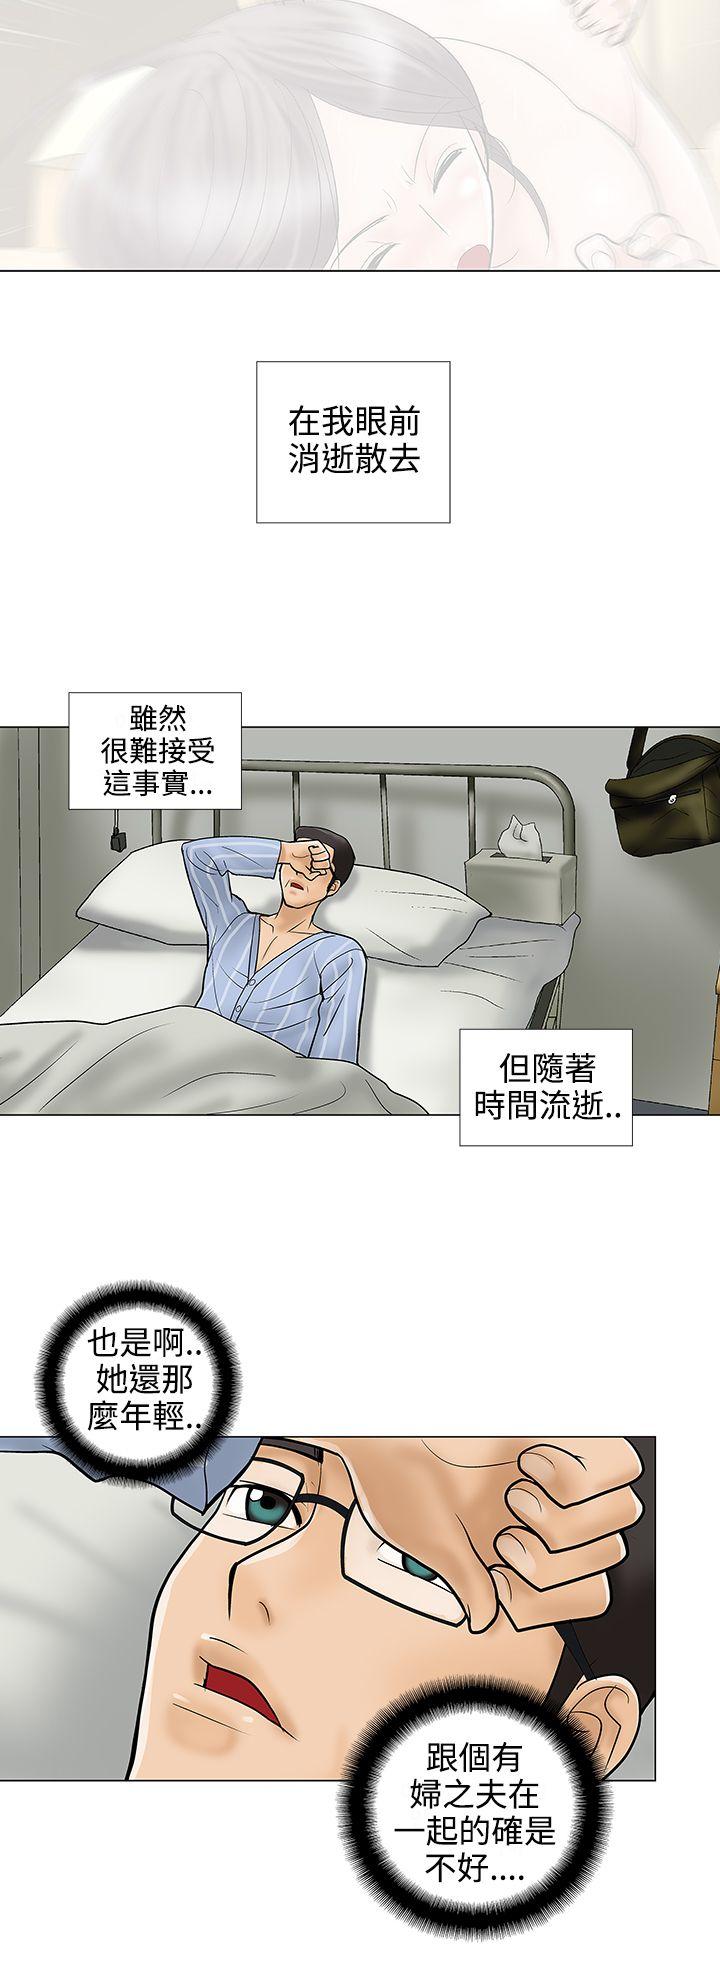 危险的爱(完结)  第30话 漫画图片4.jpg